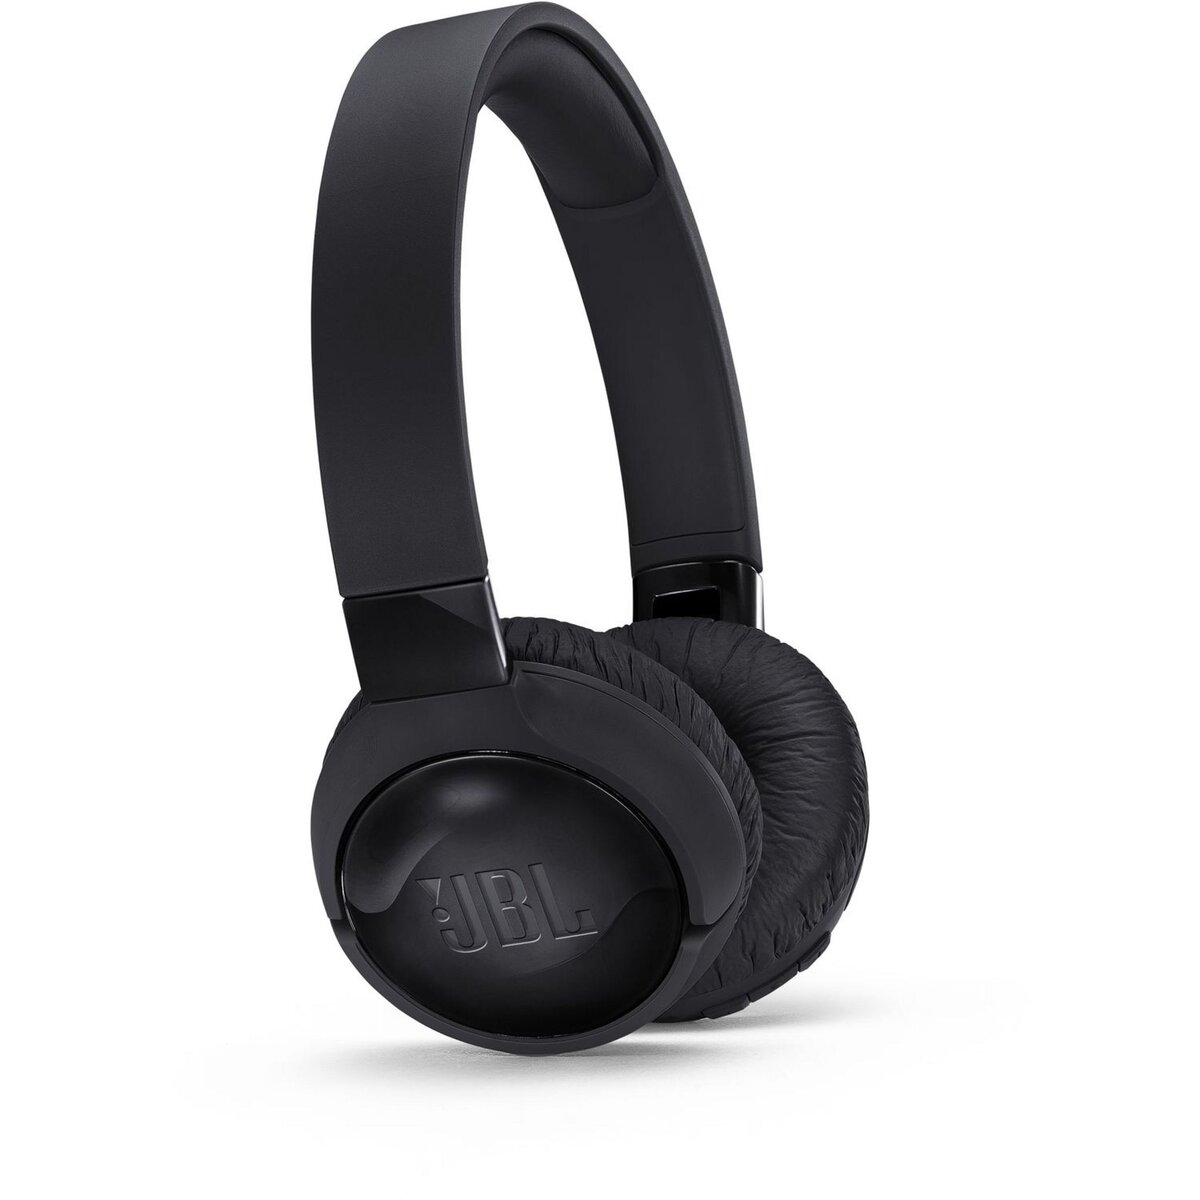 JBL Casque audio Bluetooth - Noir - T660BTNC pas cher 